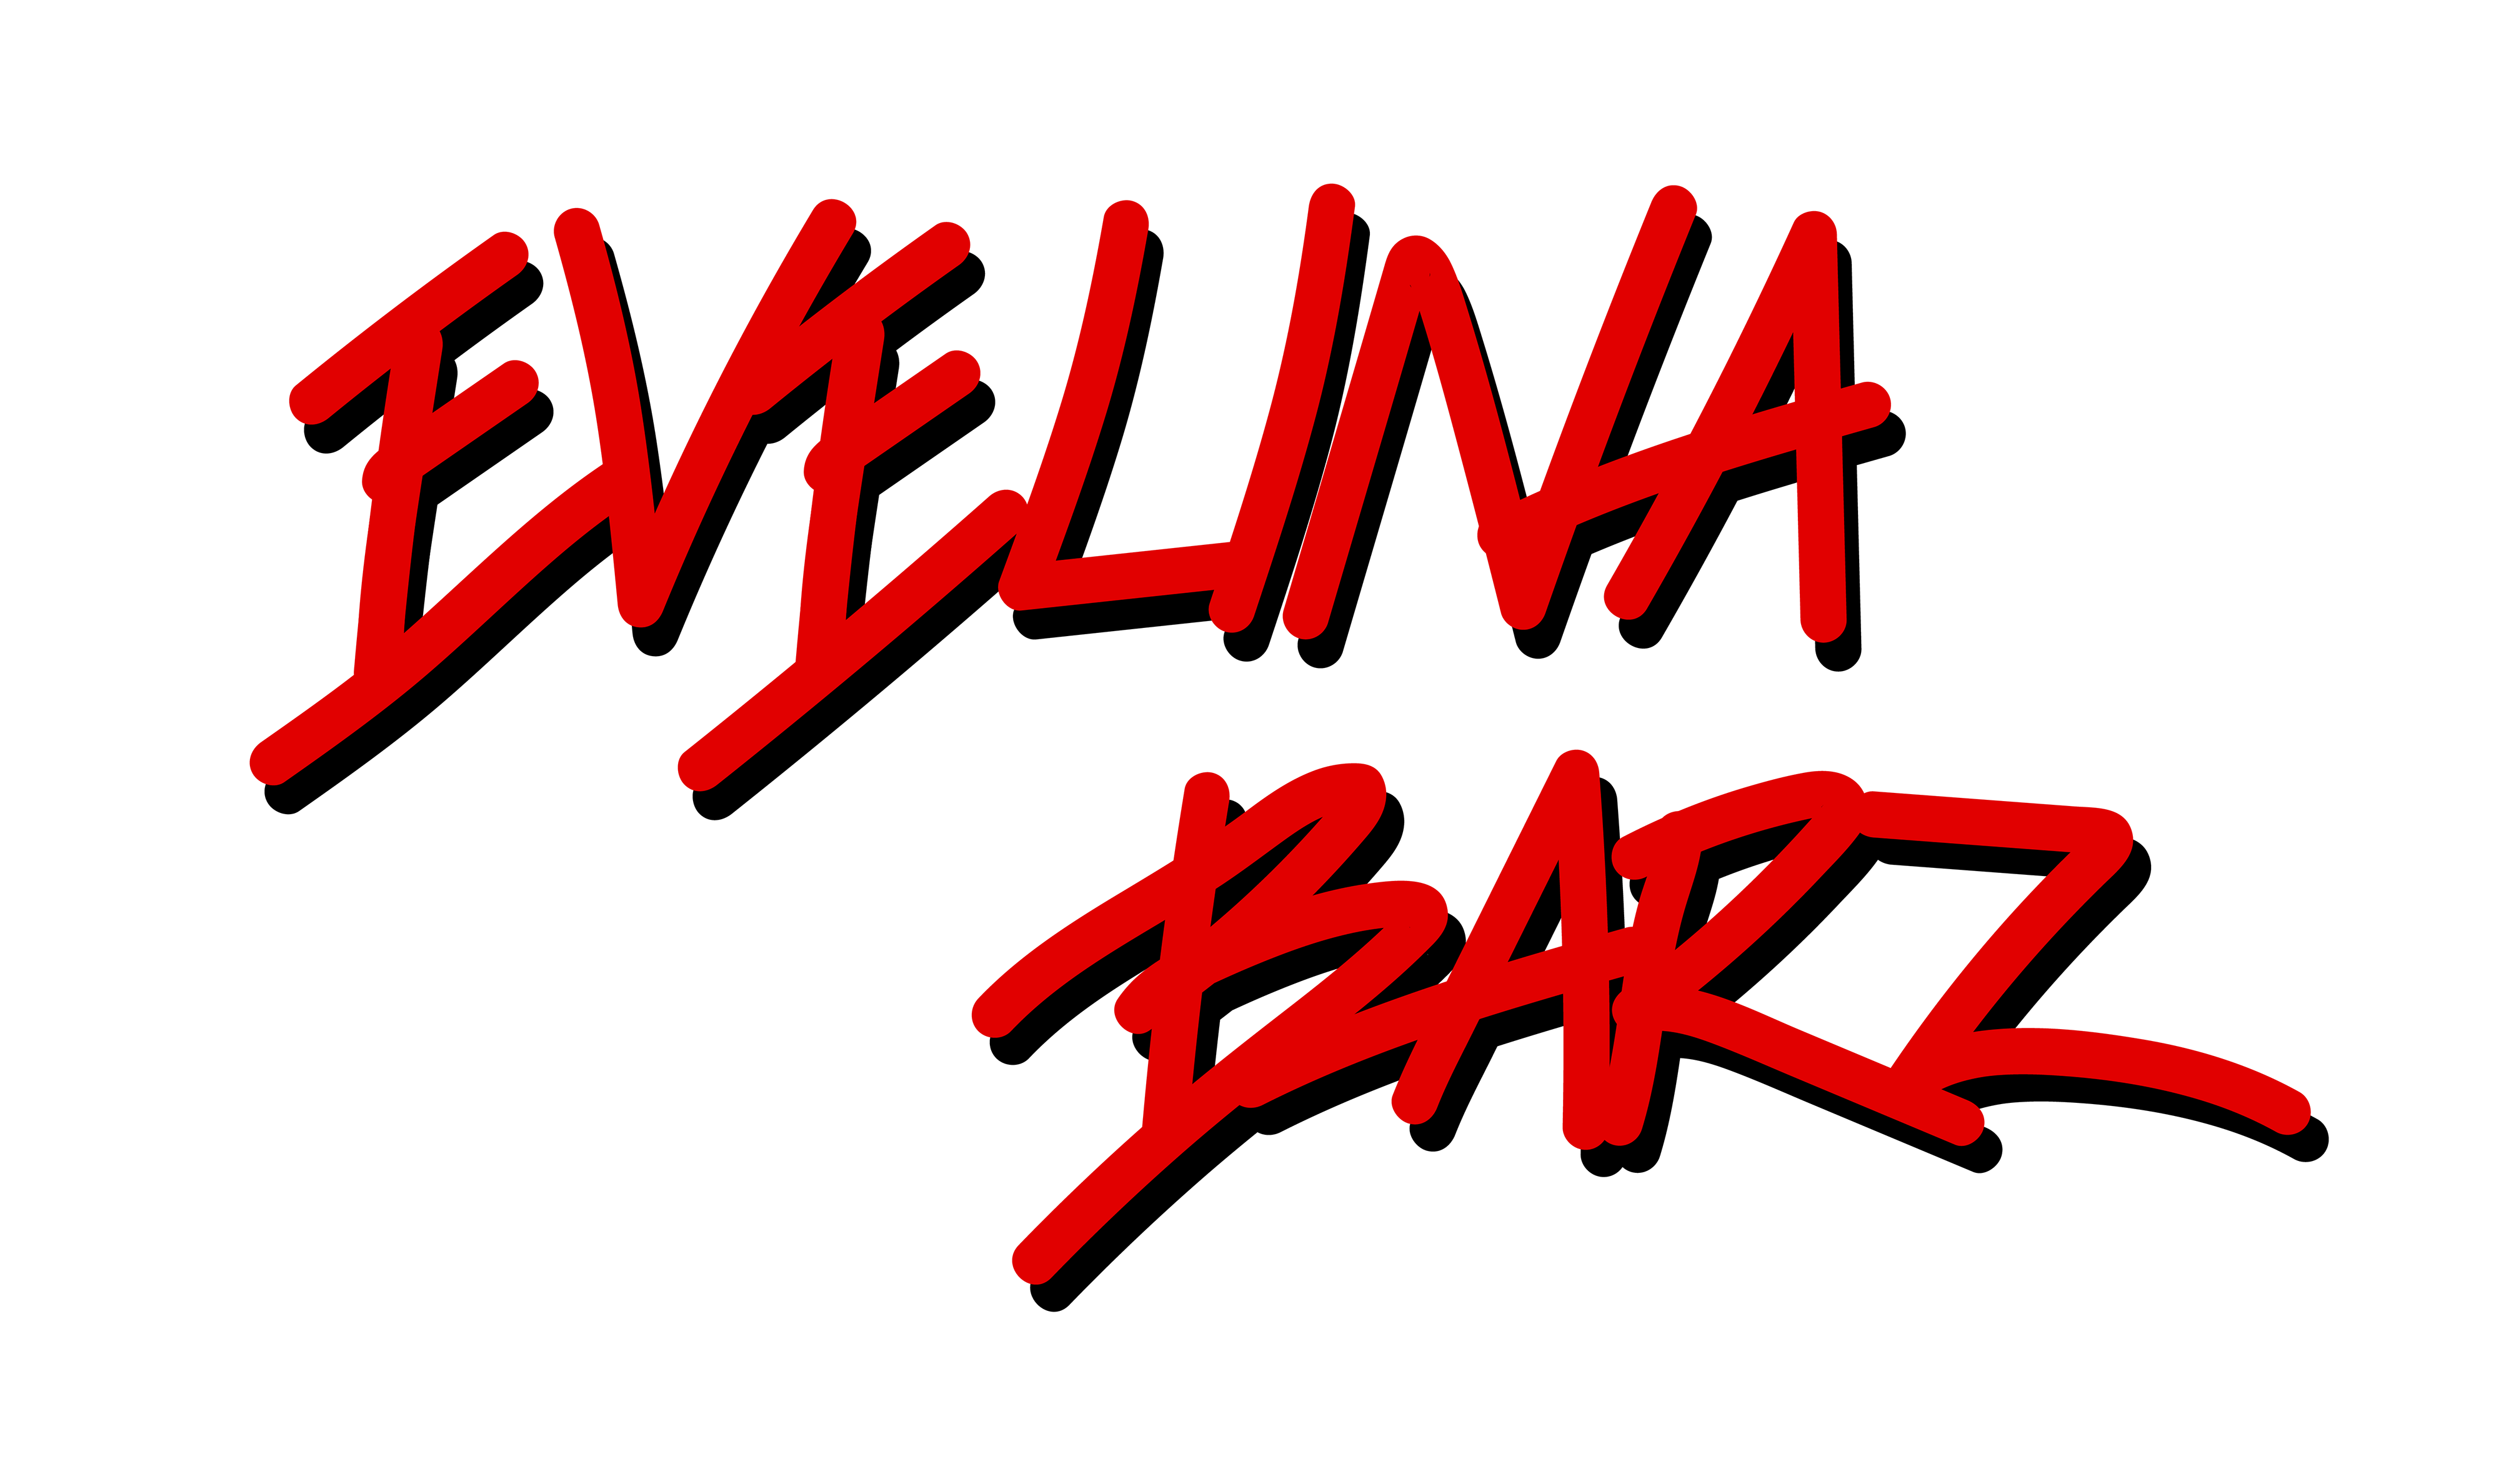 Evelina Barz